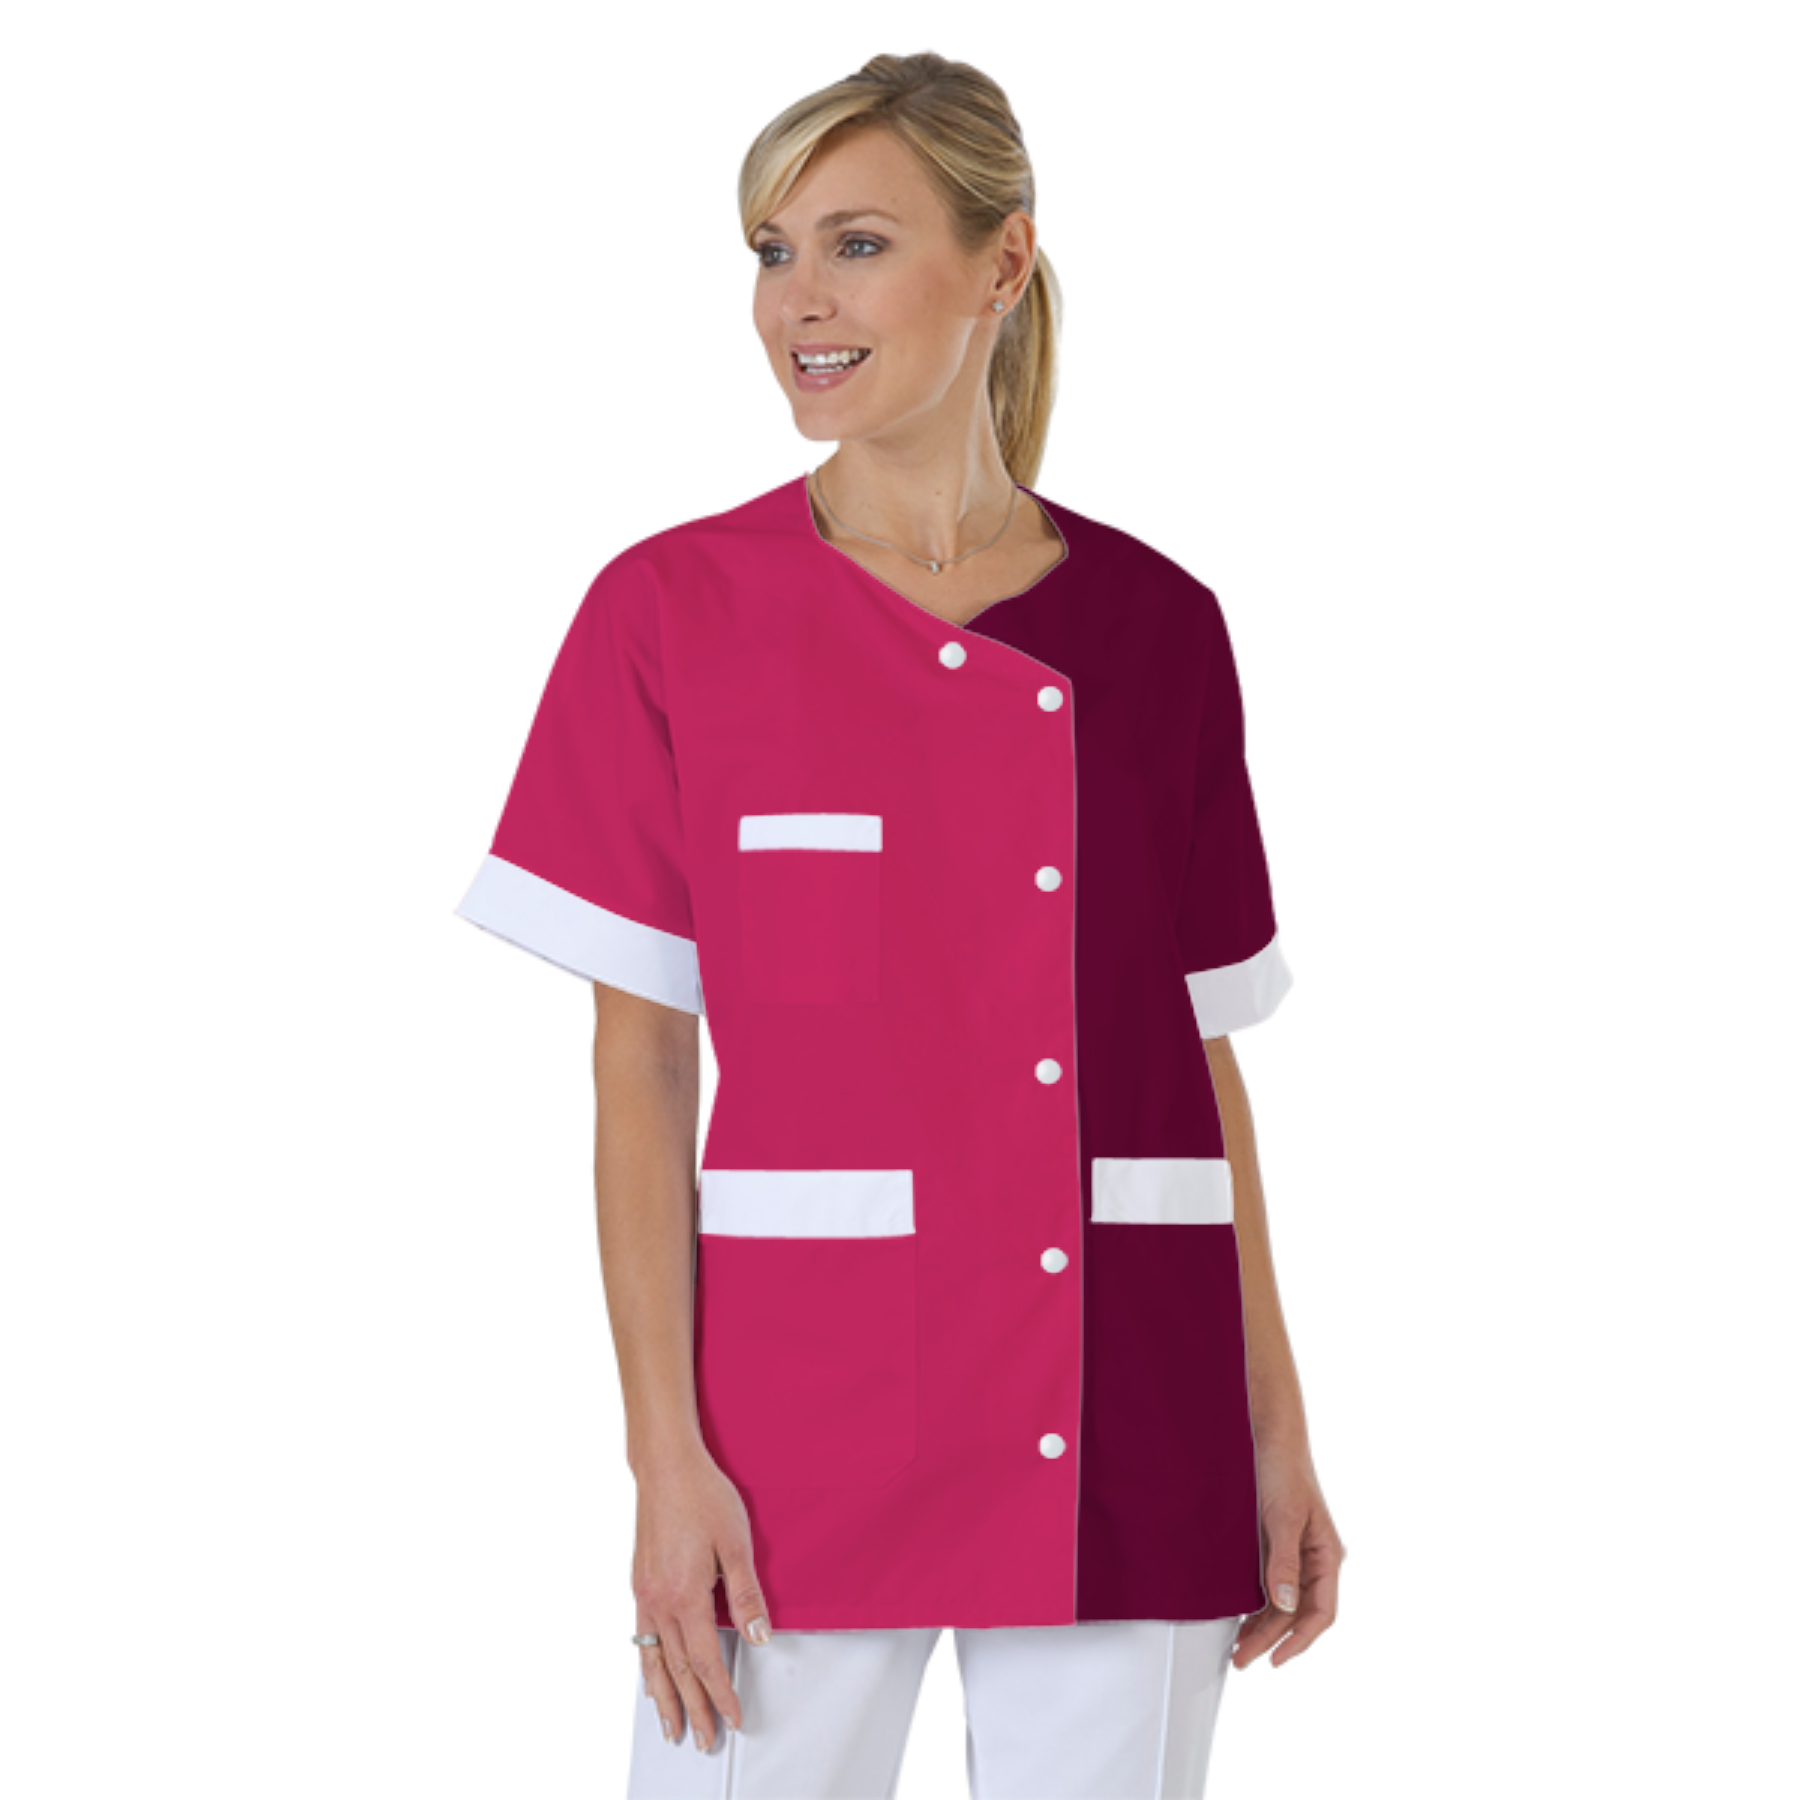 blouse-infirmiere-personnalise-col-trapeze acheté - par Émilie - le 29-03-2021